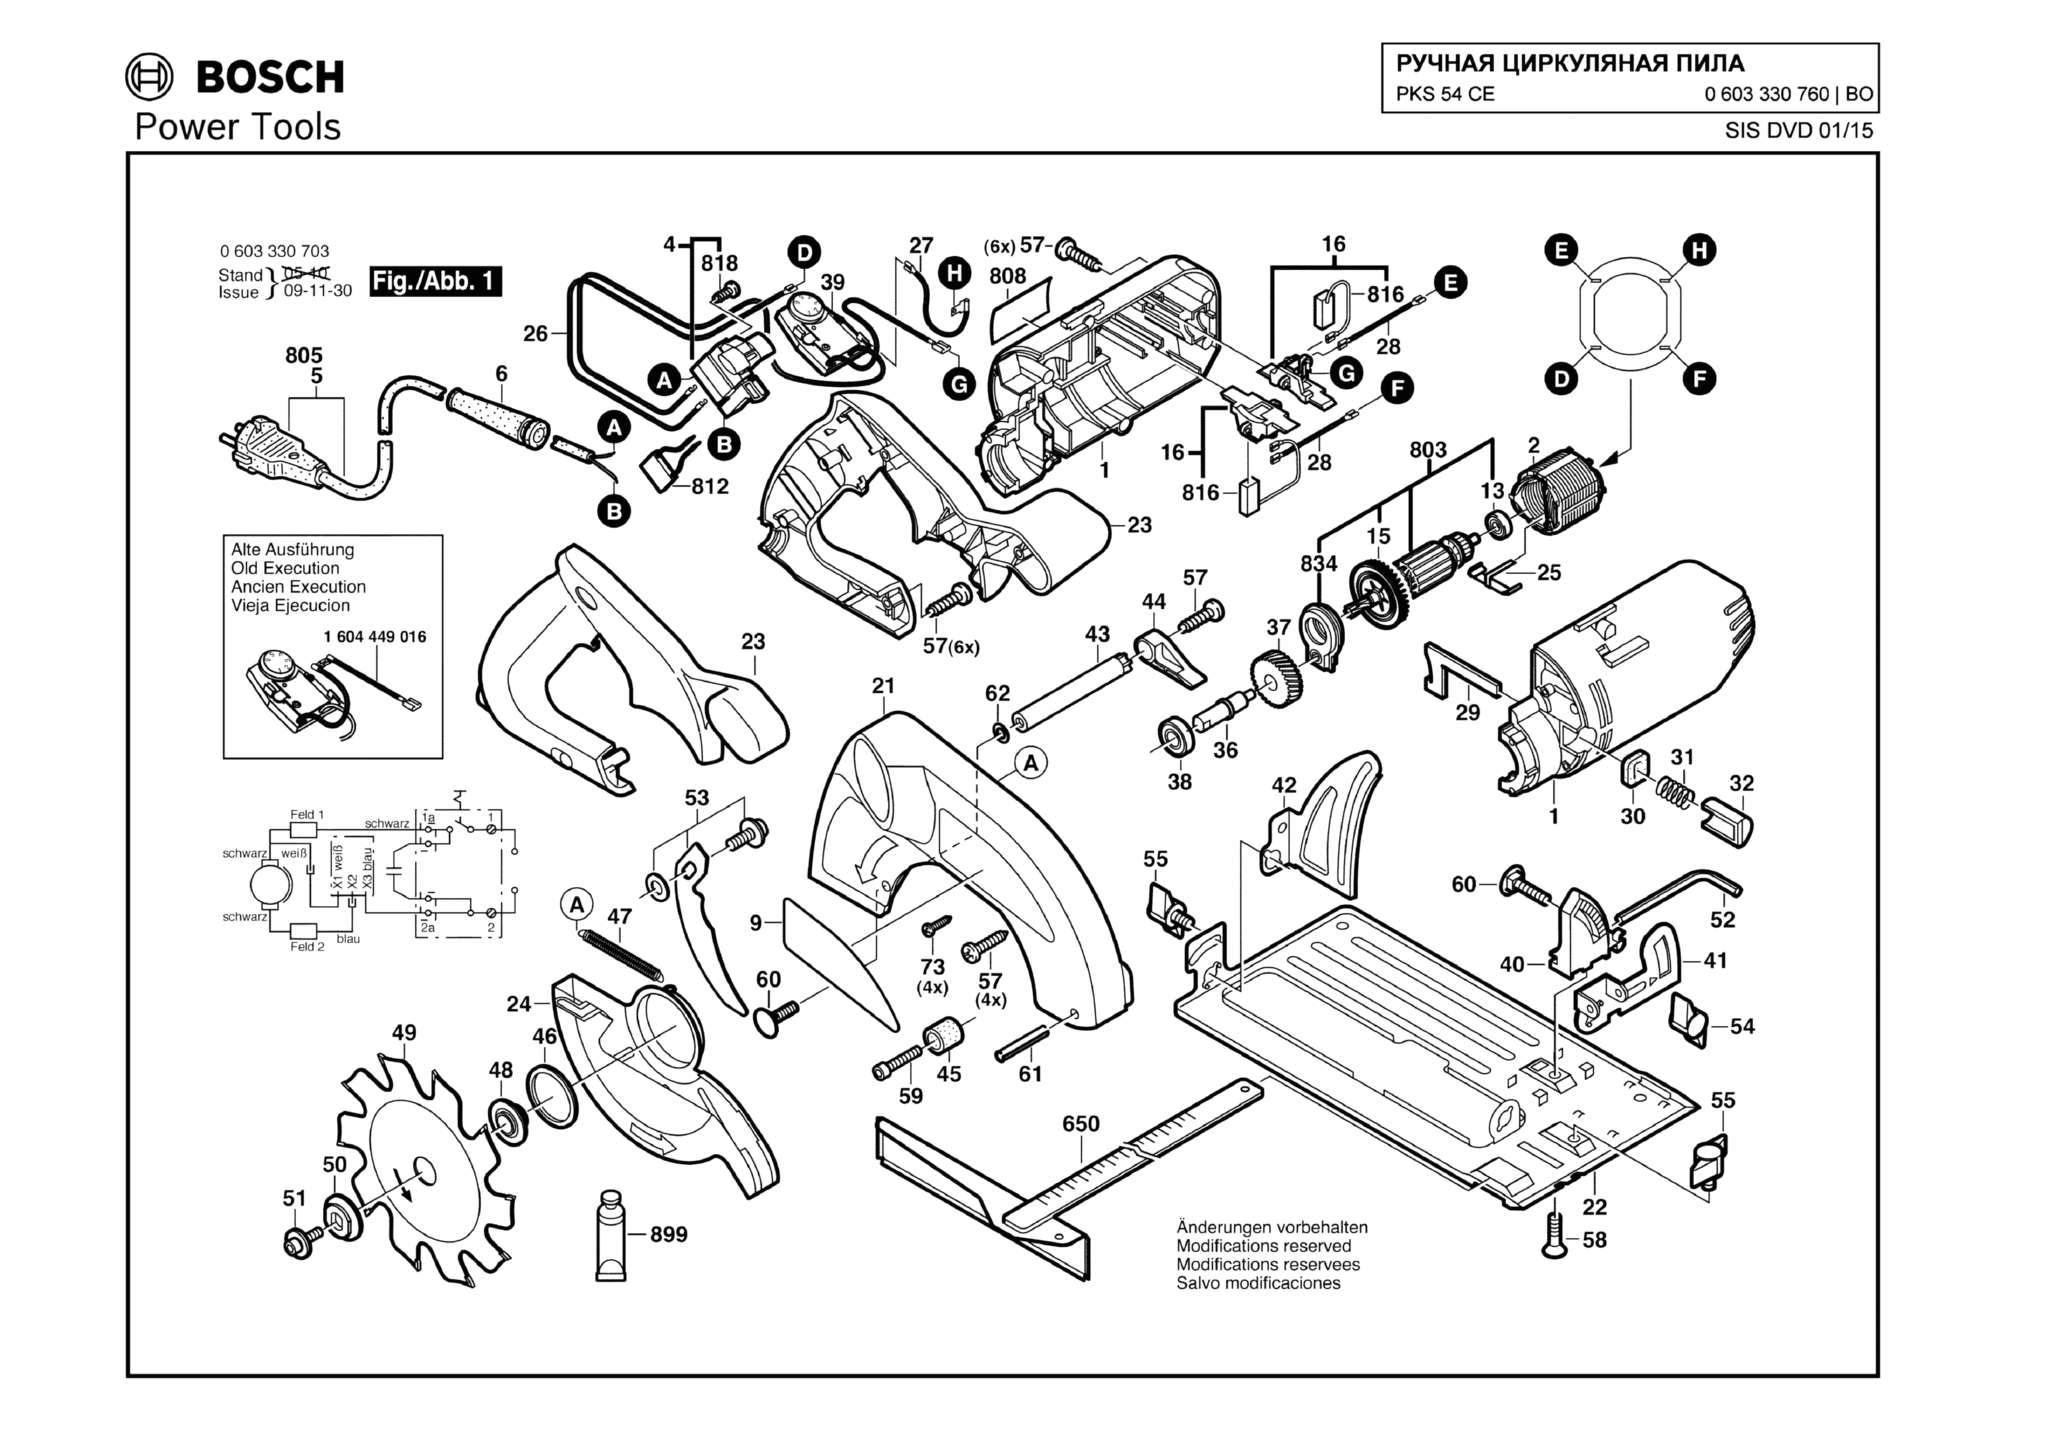 Запчасти, схема и деталировка Bosch PKS 54 CE (ТИП 0603330760)